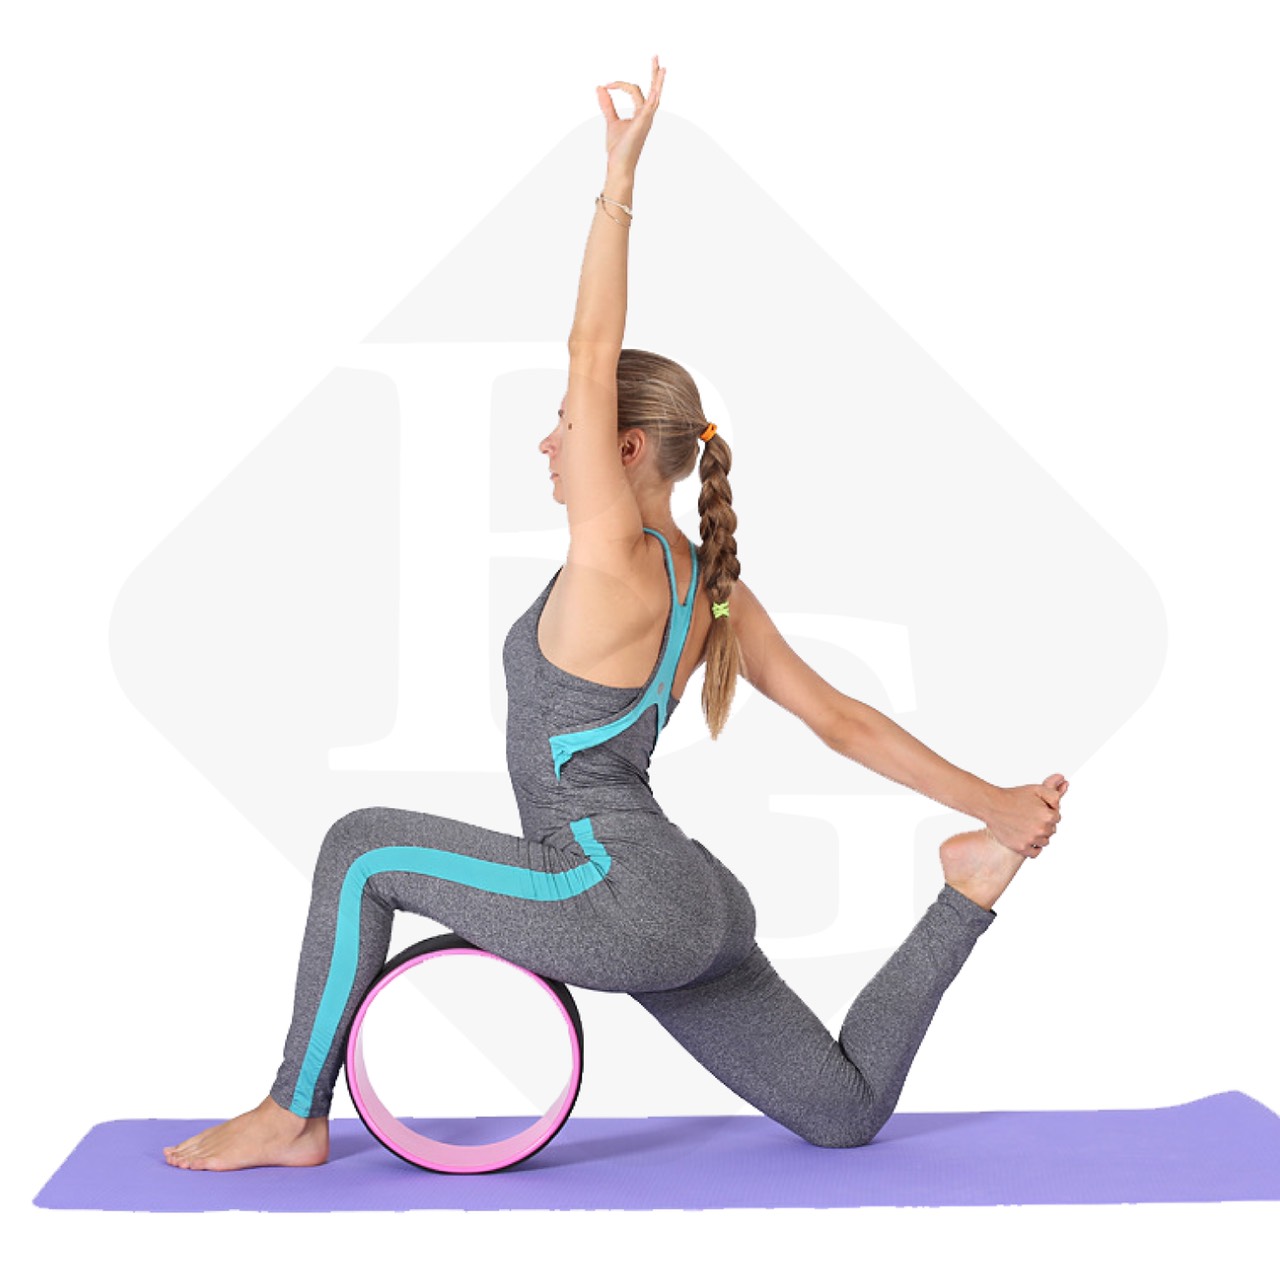 BG Vòng Tập Yoga BLUE PINK, Vòng Yoga Pilates Nhựa ABS 33cm Tập Lưng Cao Cấp Chính Hãng Yoga Wheel (hàng nhập khẩu)